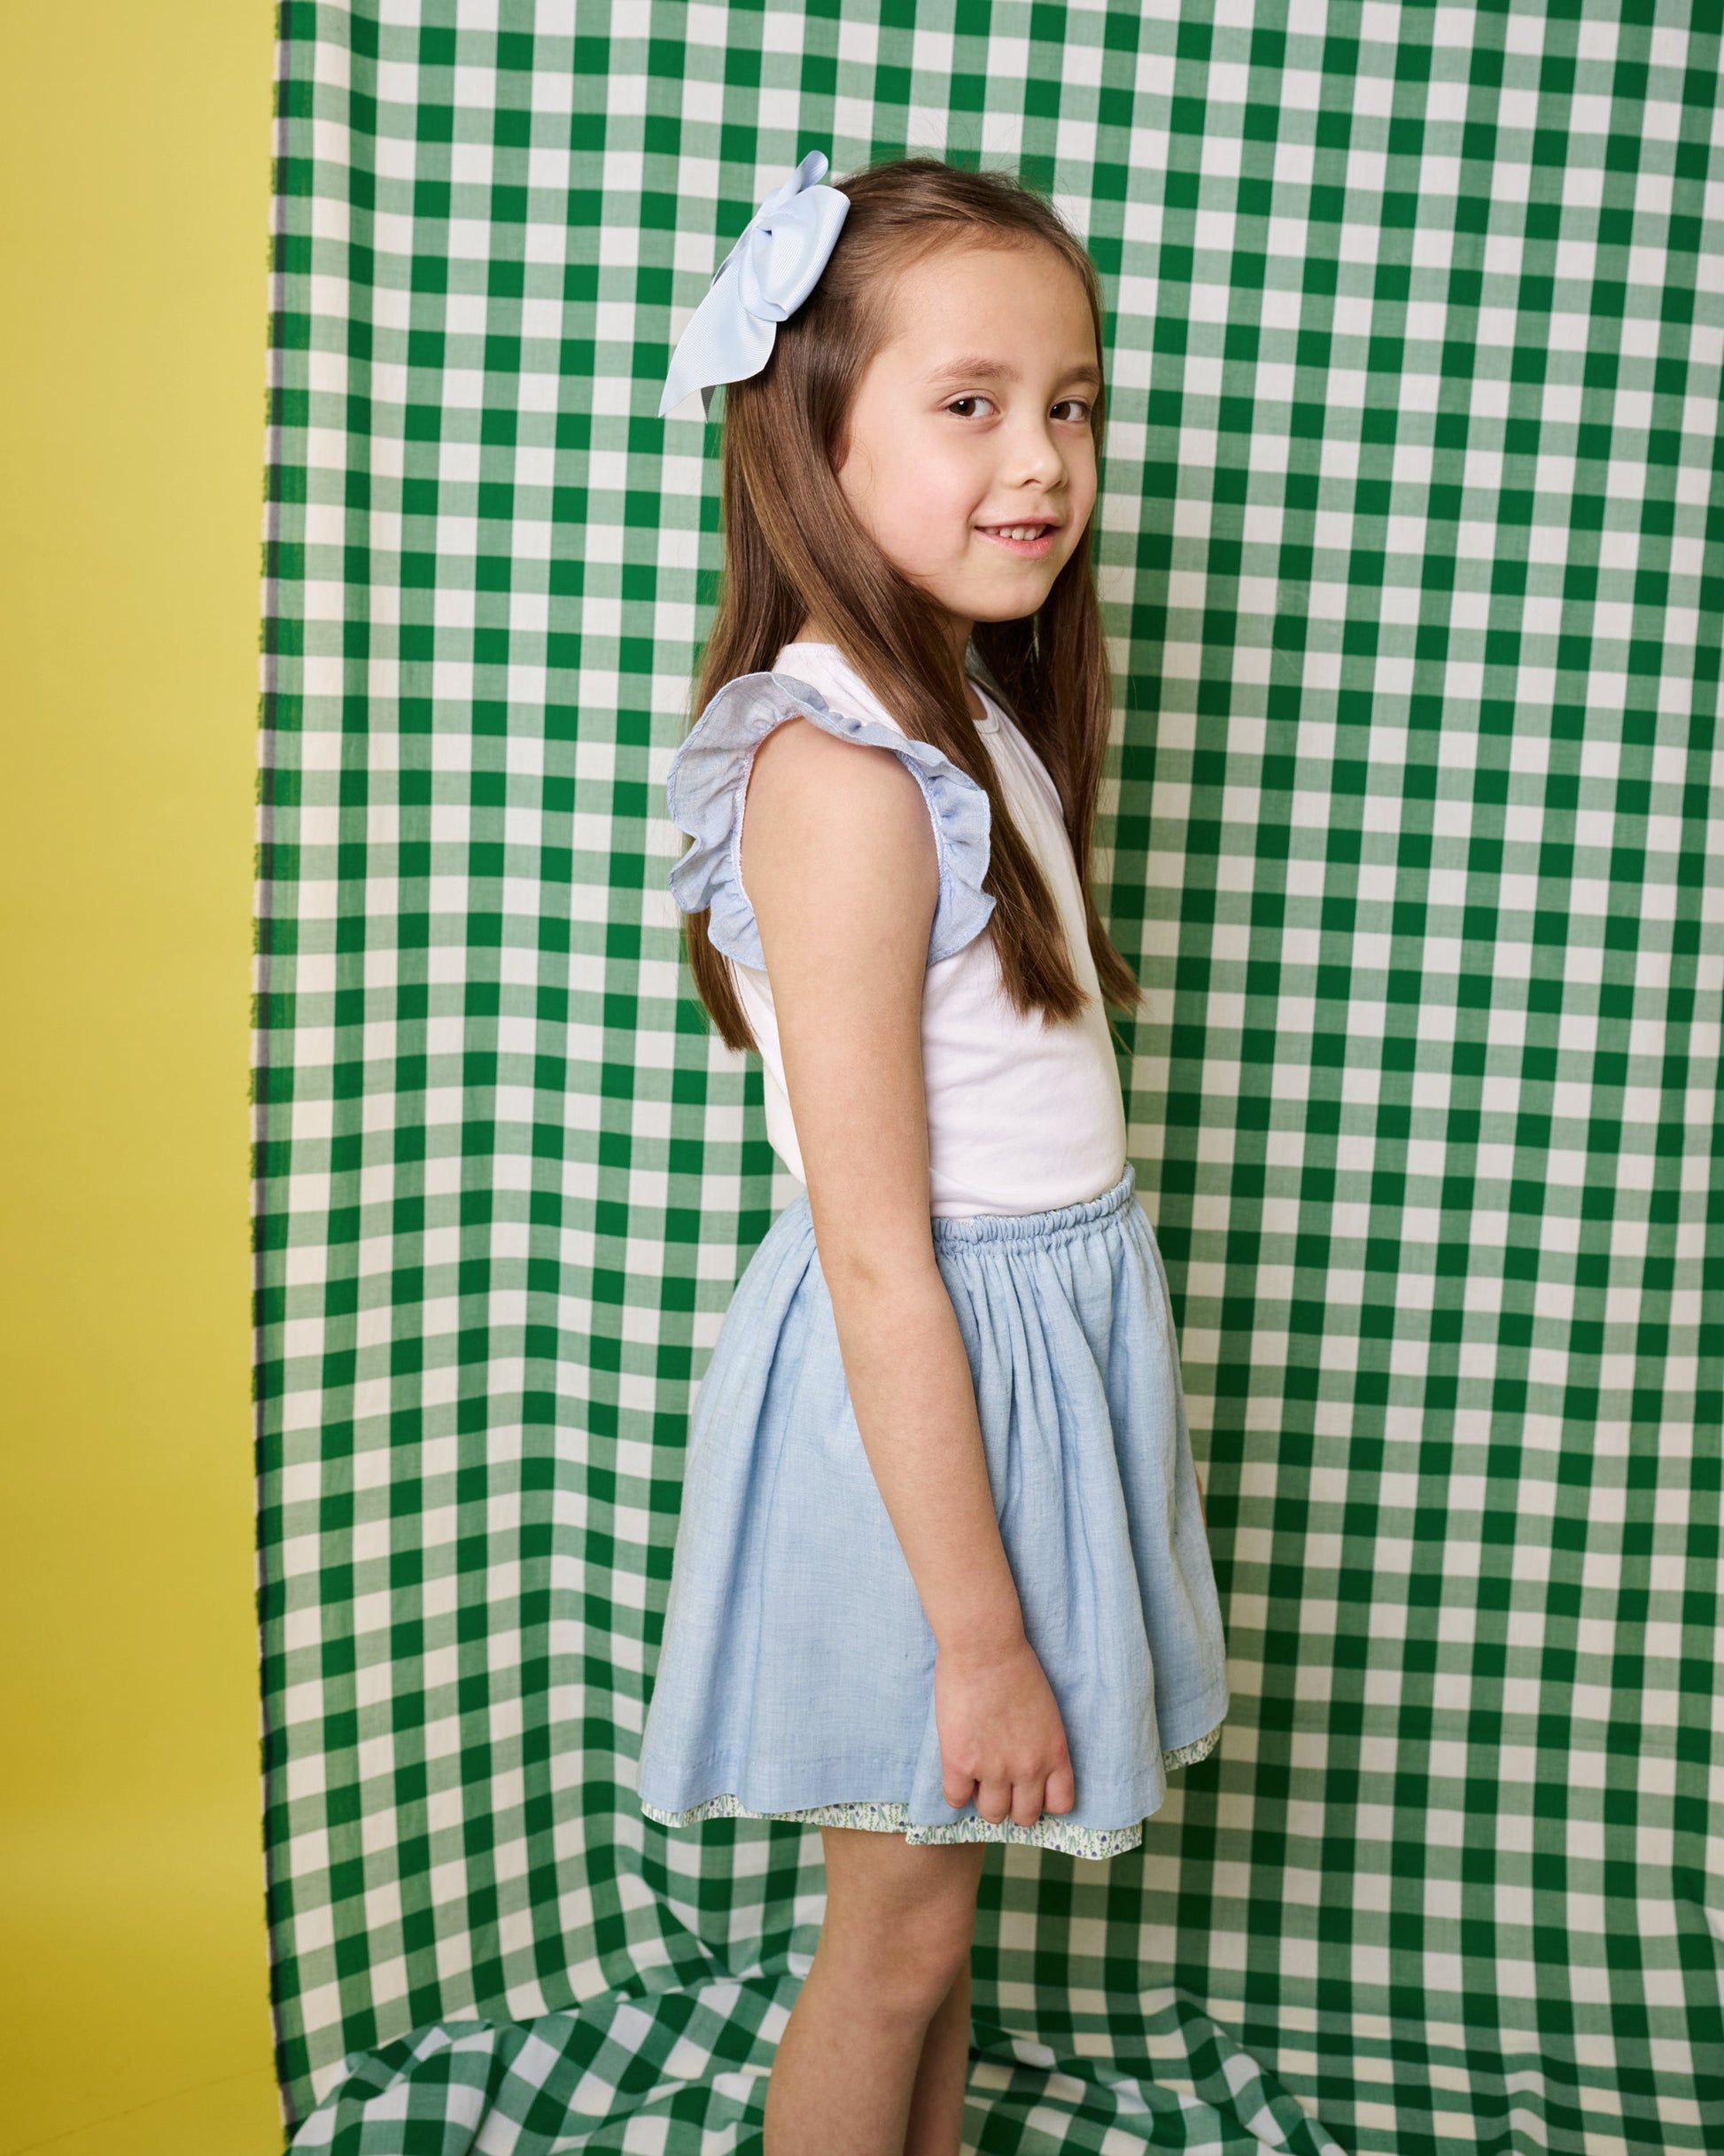 #childrenswear#dress## #Ilporticciolo#